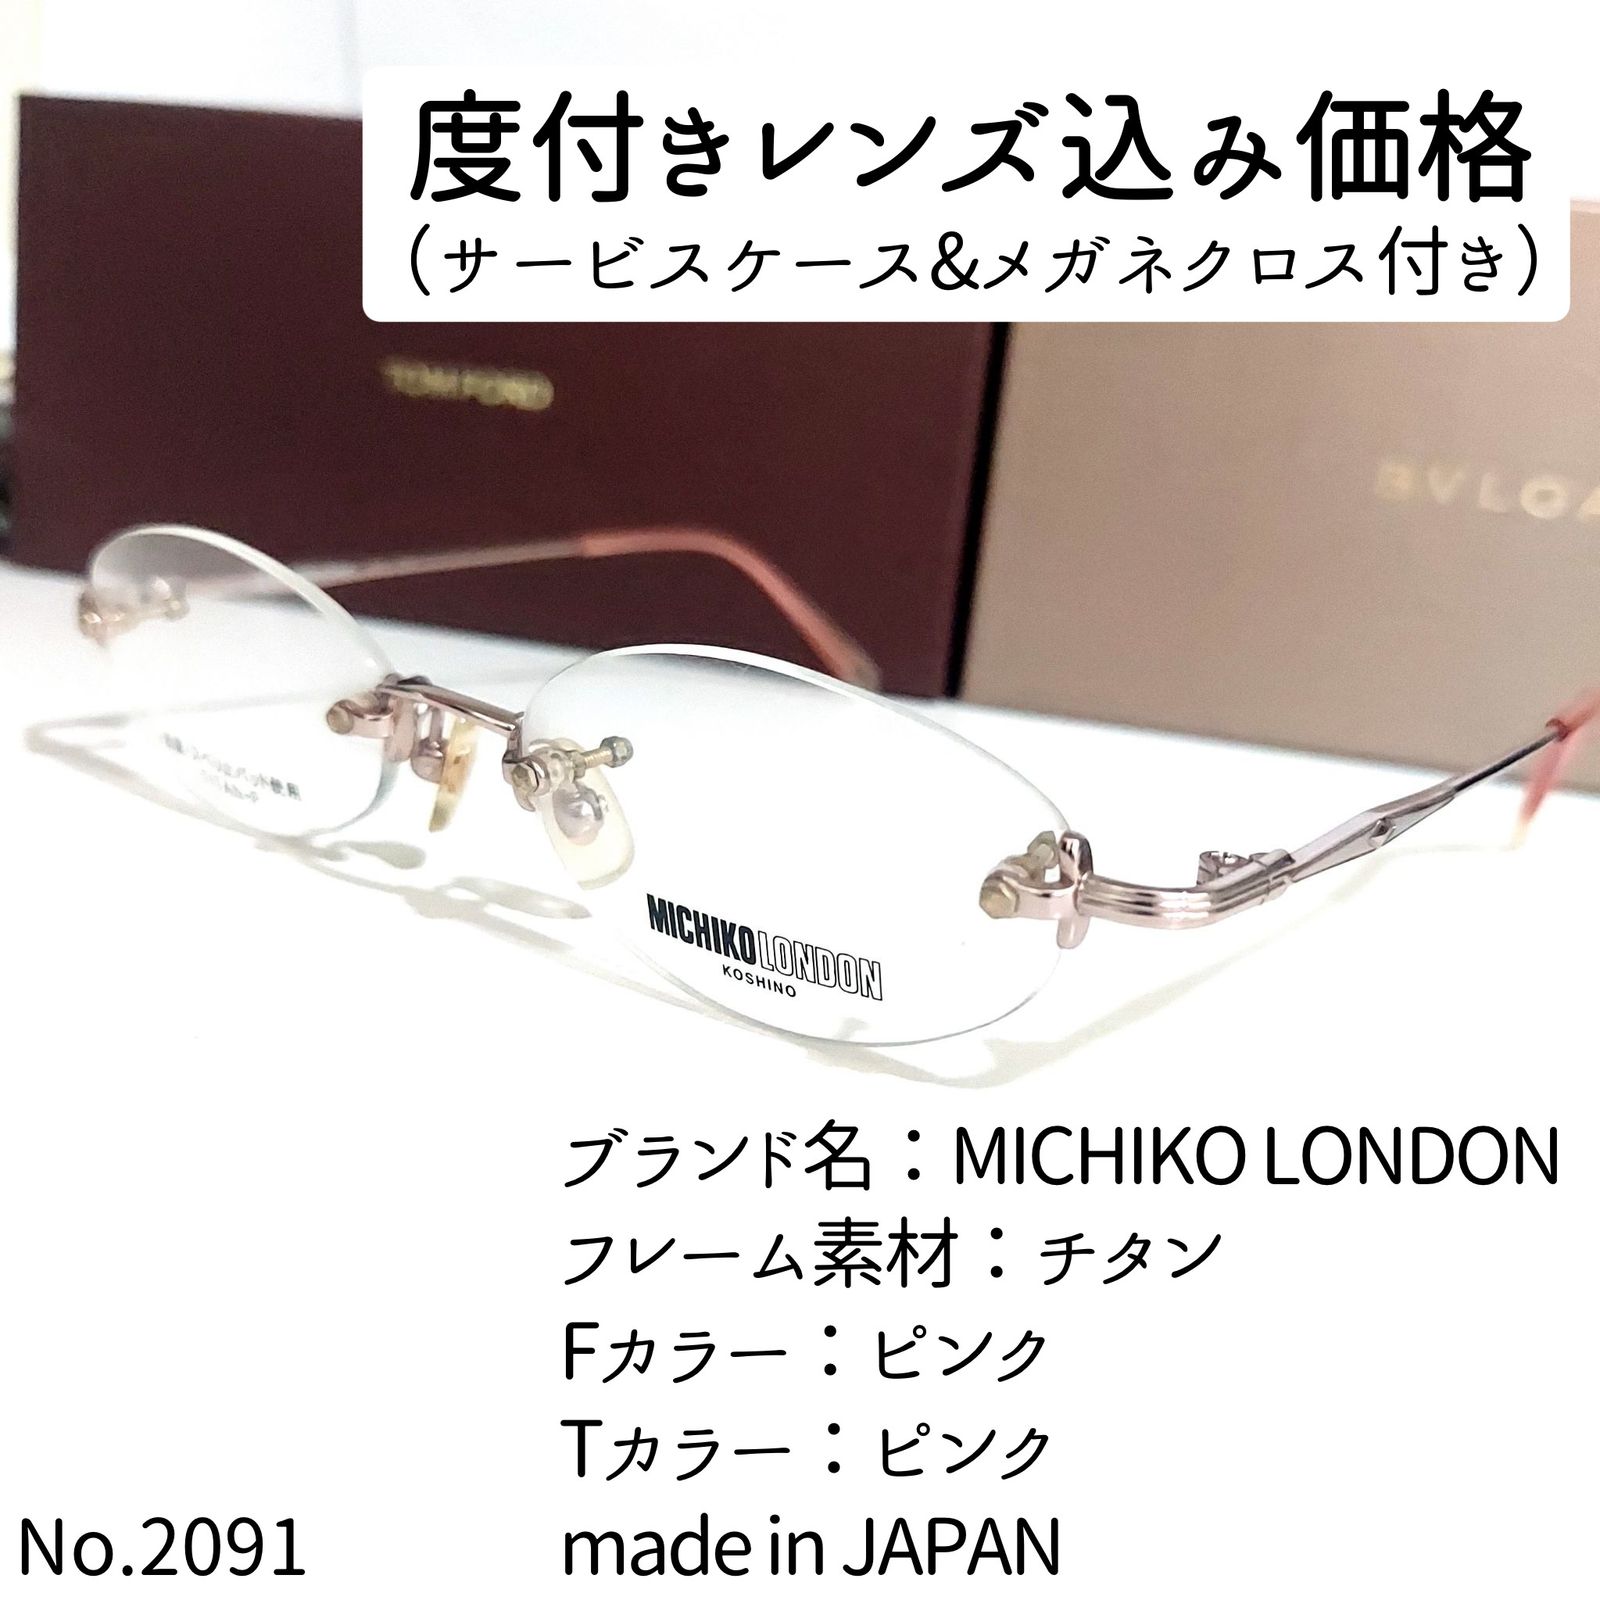 No.2091メガネ MICHIKO LONDON【度数入り込み価格】 - メルカリ